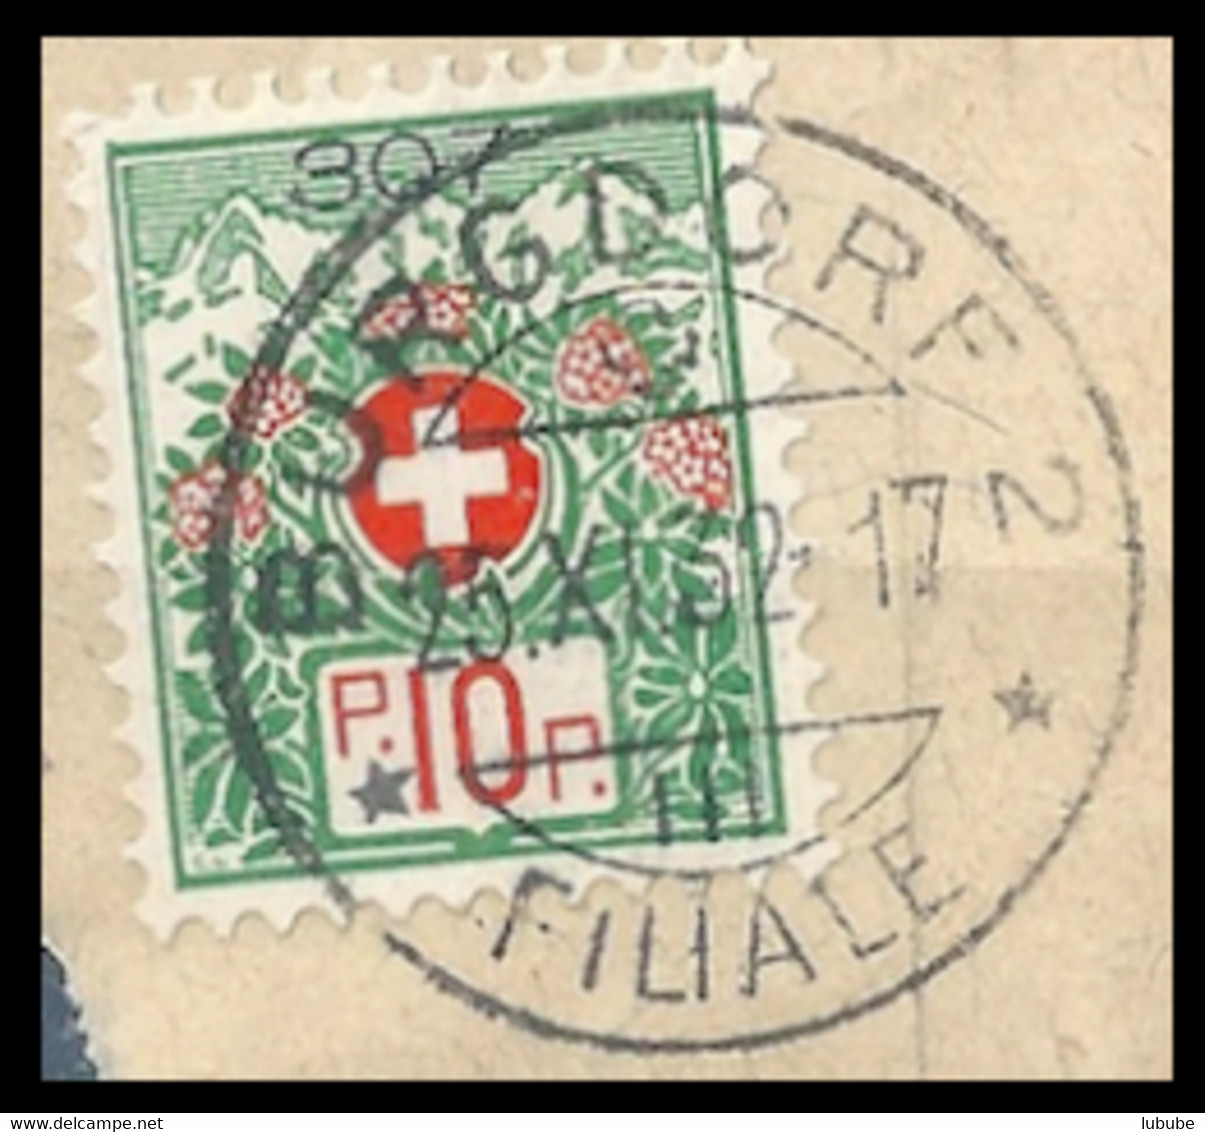 Portofreiheit 12A  "Burgdorf 2 Filiale"  (Kontrollzeichen 307 - Bezirks Krankenhaus)   1932 - Vrijstelling Van Portkosten